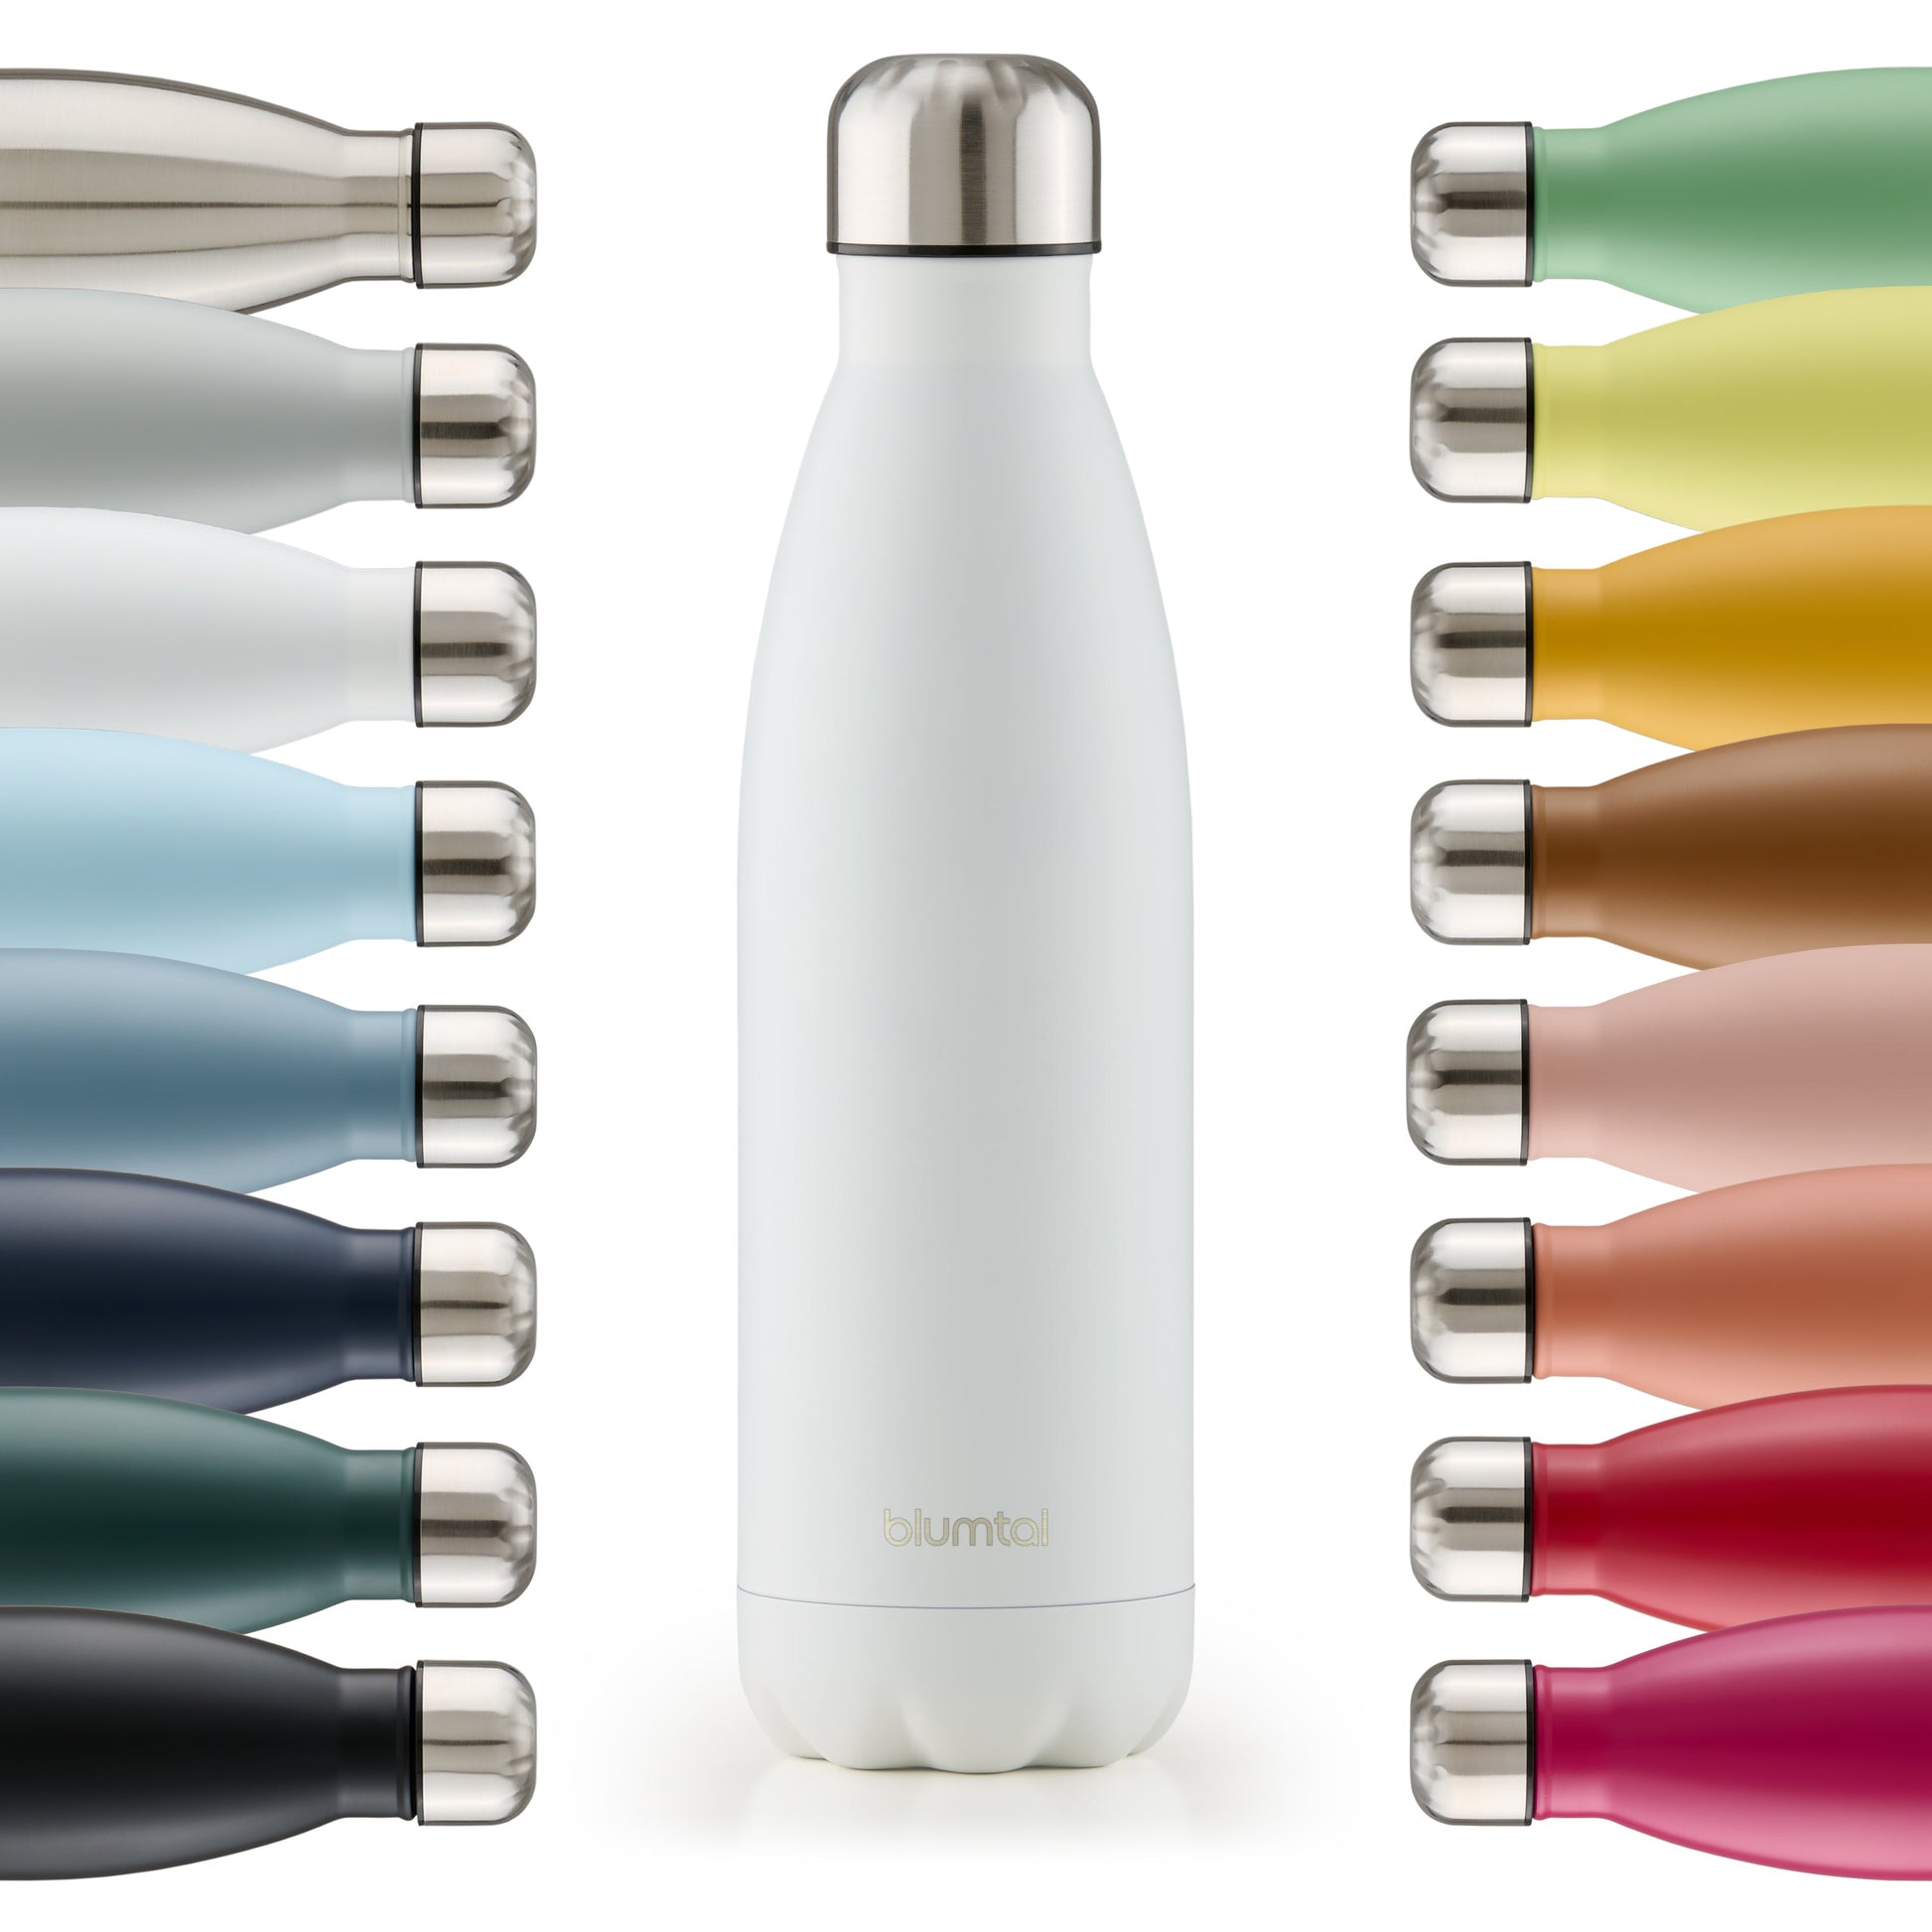 Farbige Auswahl an isolierten Edelstahl-Trinkflaschen von blumtal in einer Reihe angeordnet mit Fokus auf eine vorderseitige weiß farbene Flasche.